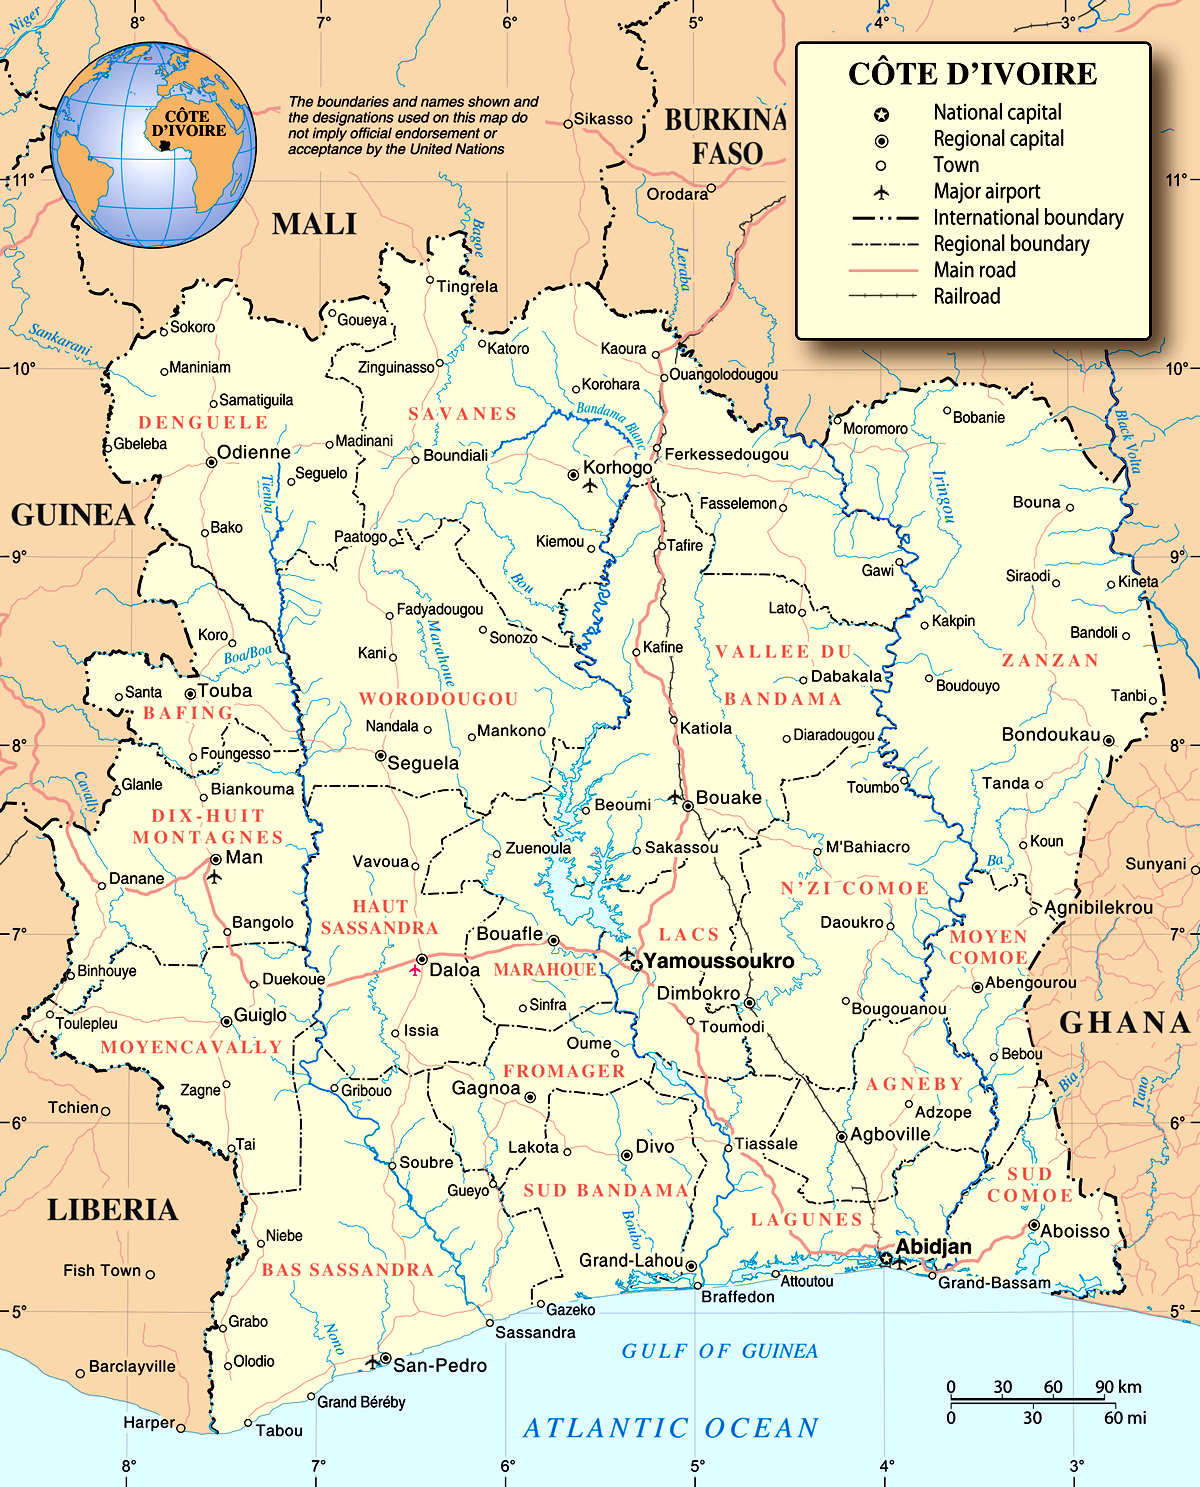 Mapa da Costa do Marfim